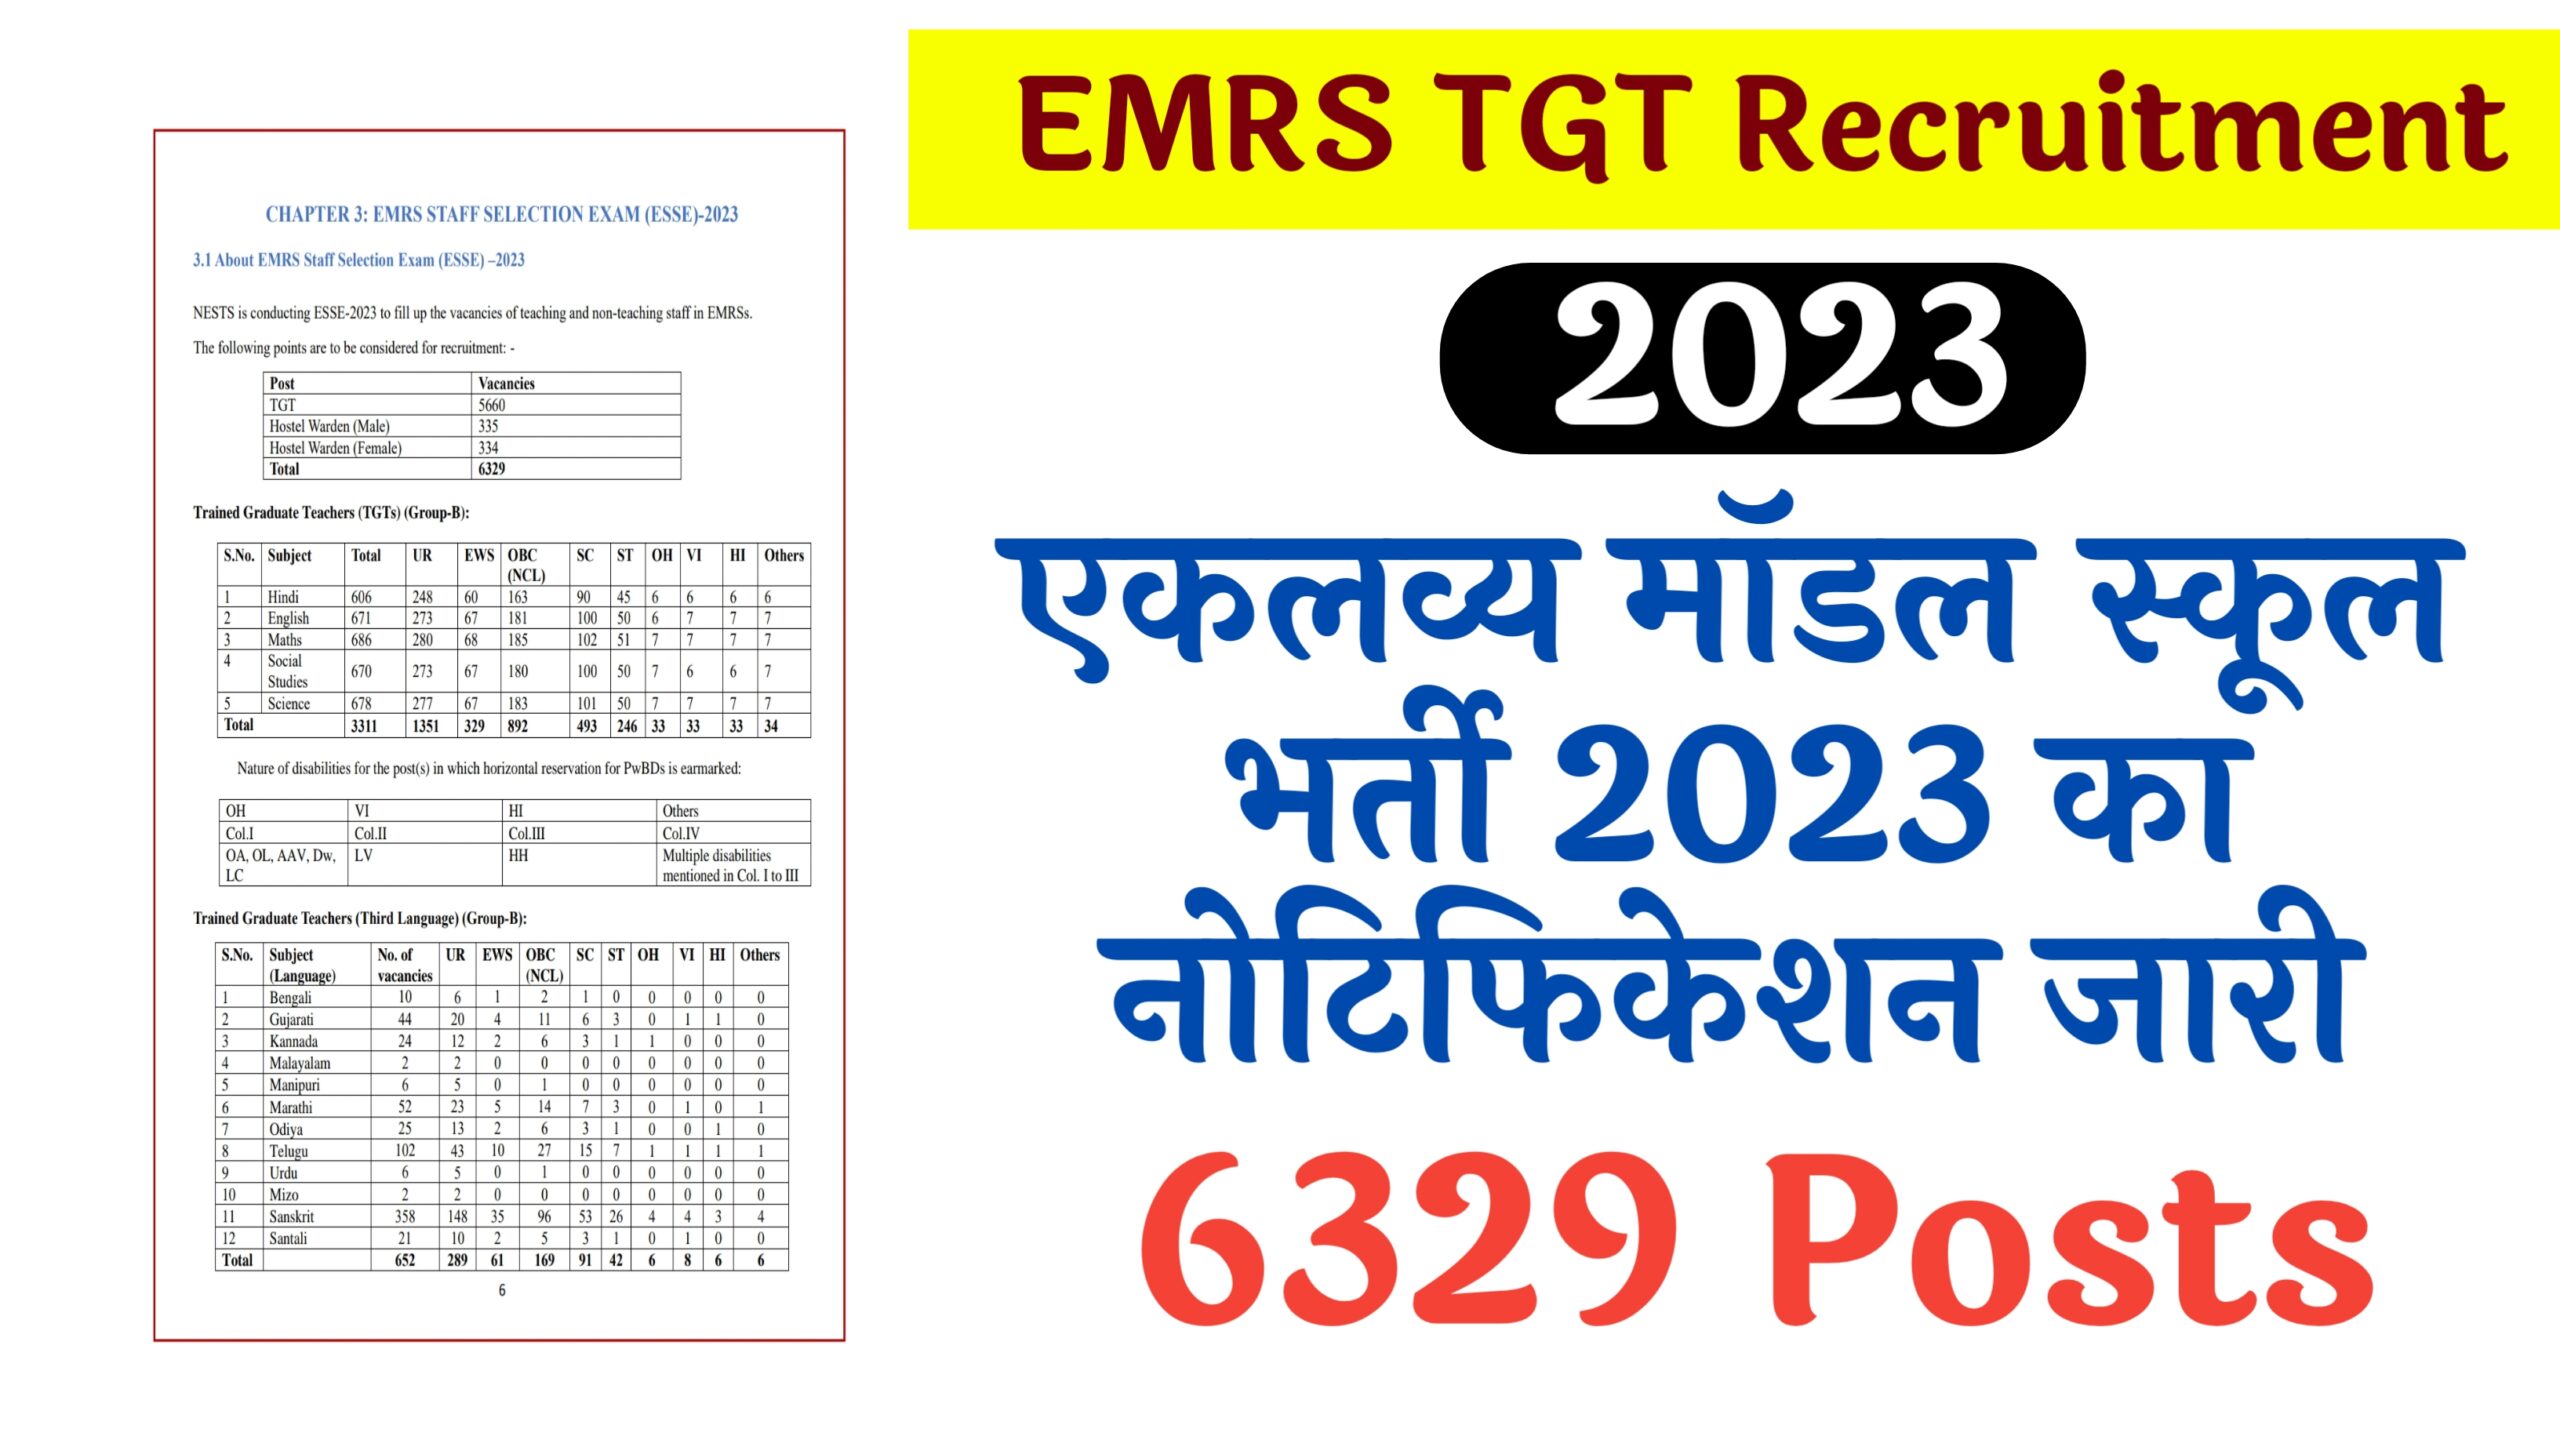 EMRS TGT Recruitment 2023 एकलव्य मॉडल स्कूल भर्ती 2023 के लिए 6329 पदों के लिए नोटोफिकेशन जारी